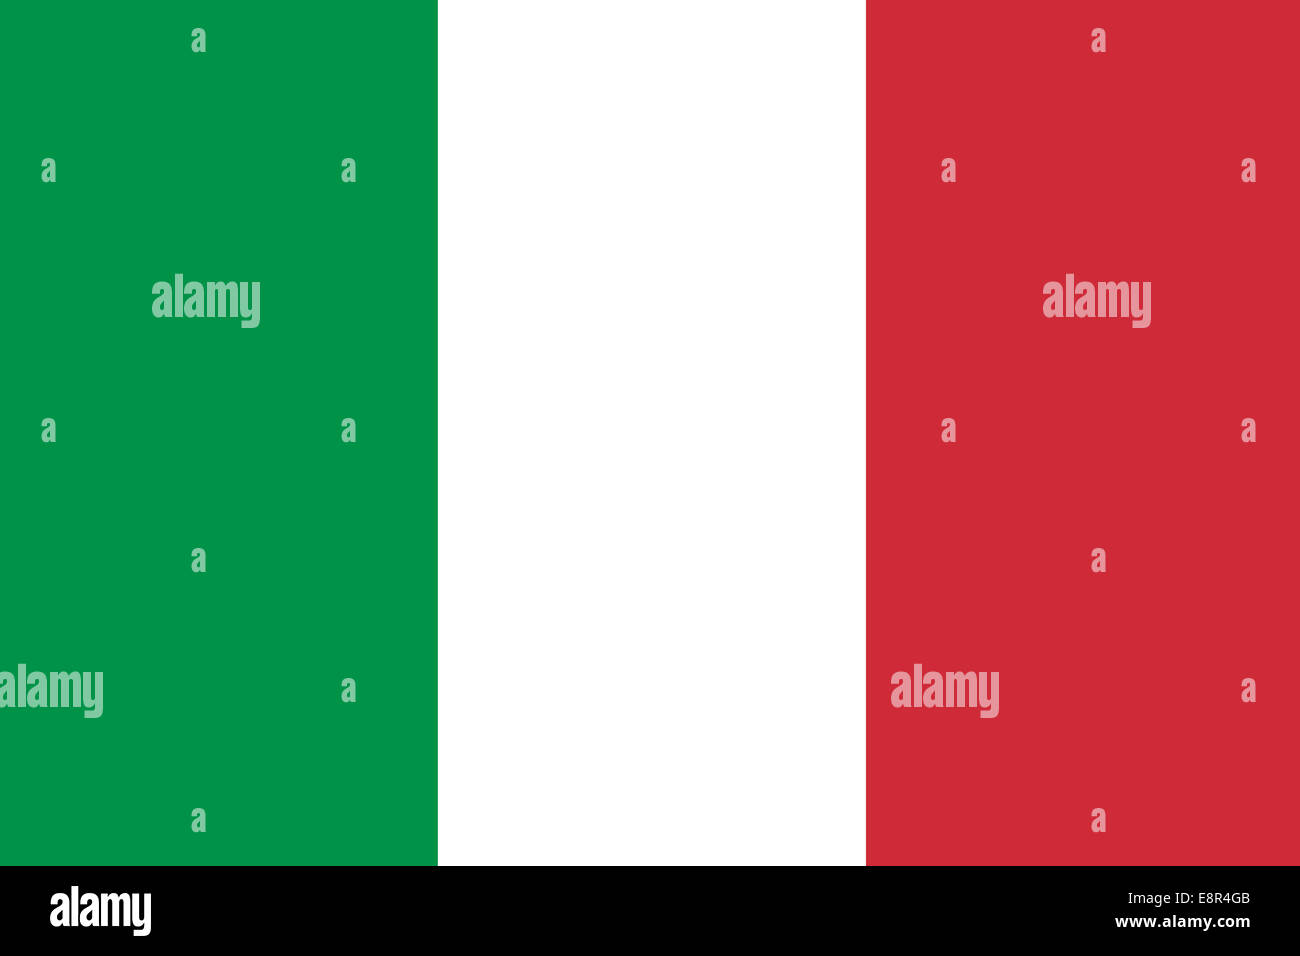 Drapeau de l'Italie - Rapport standard du drapeau italien - mode couleur RVB réel Banque D'Images